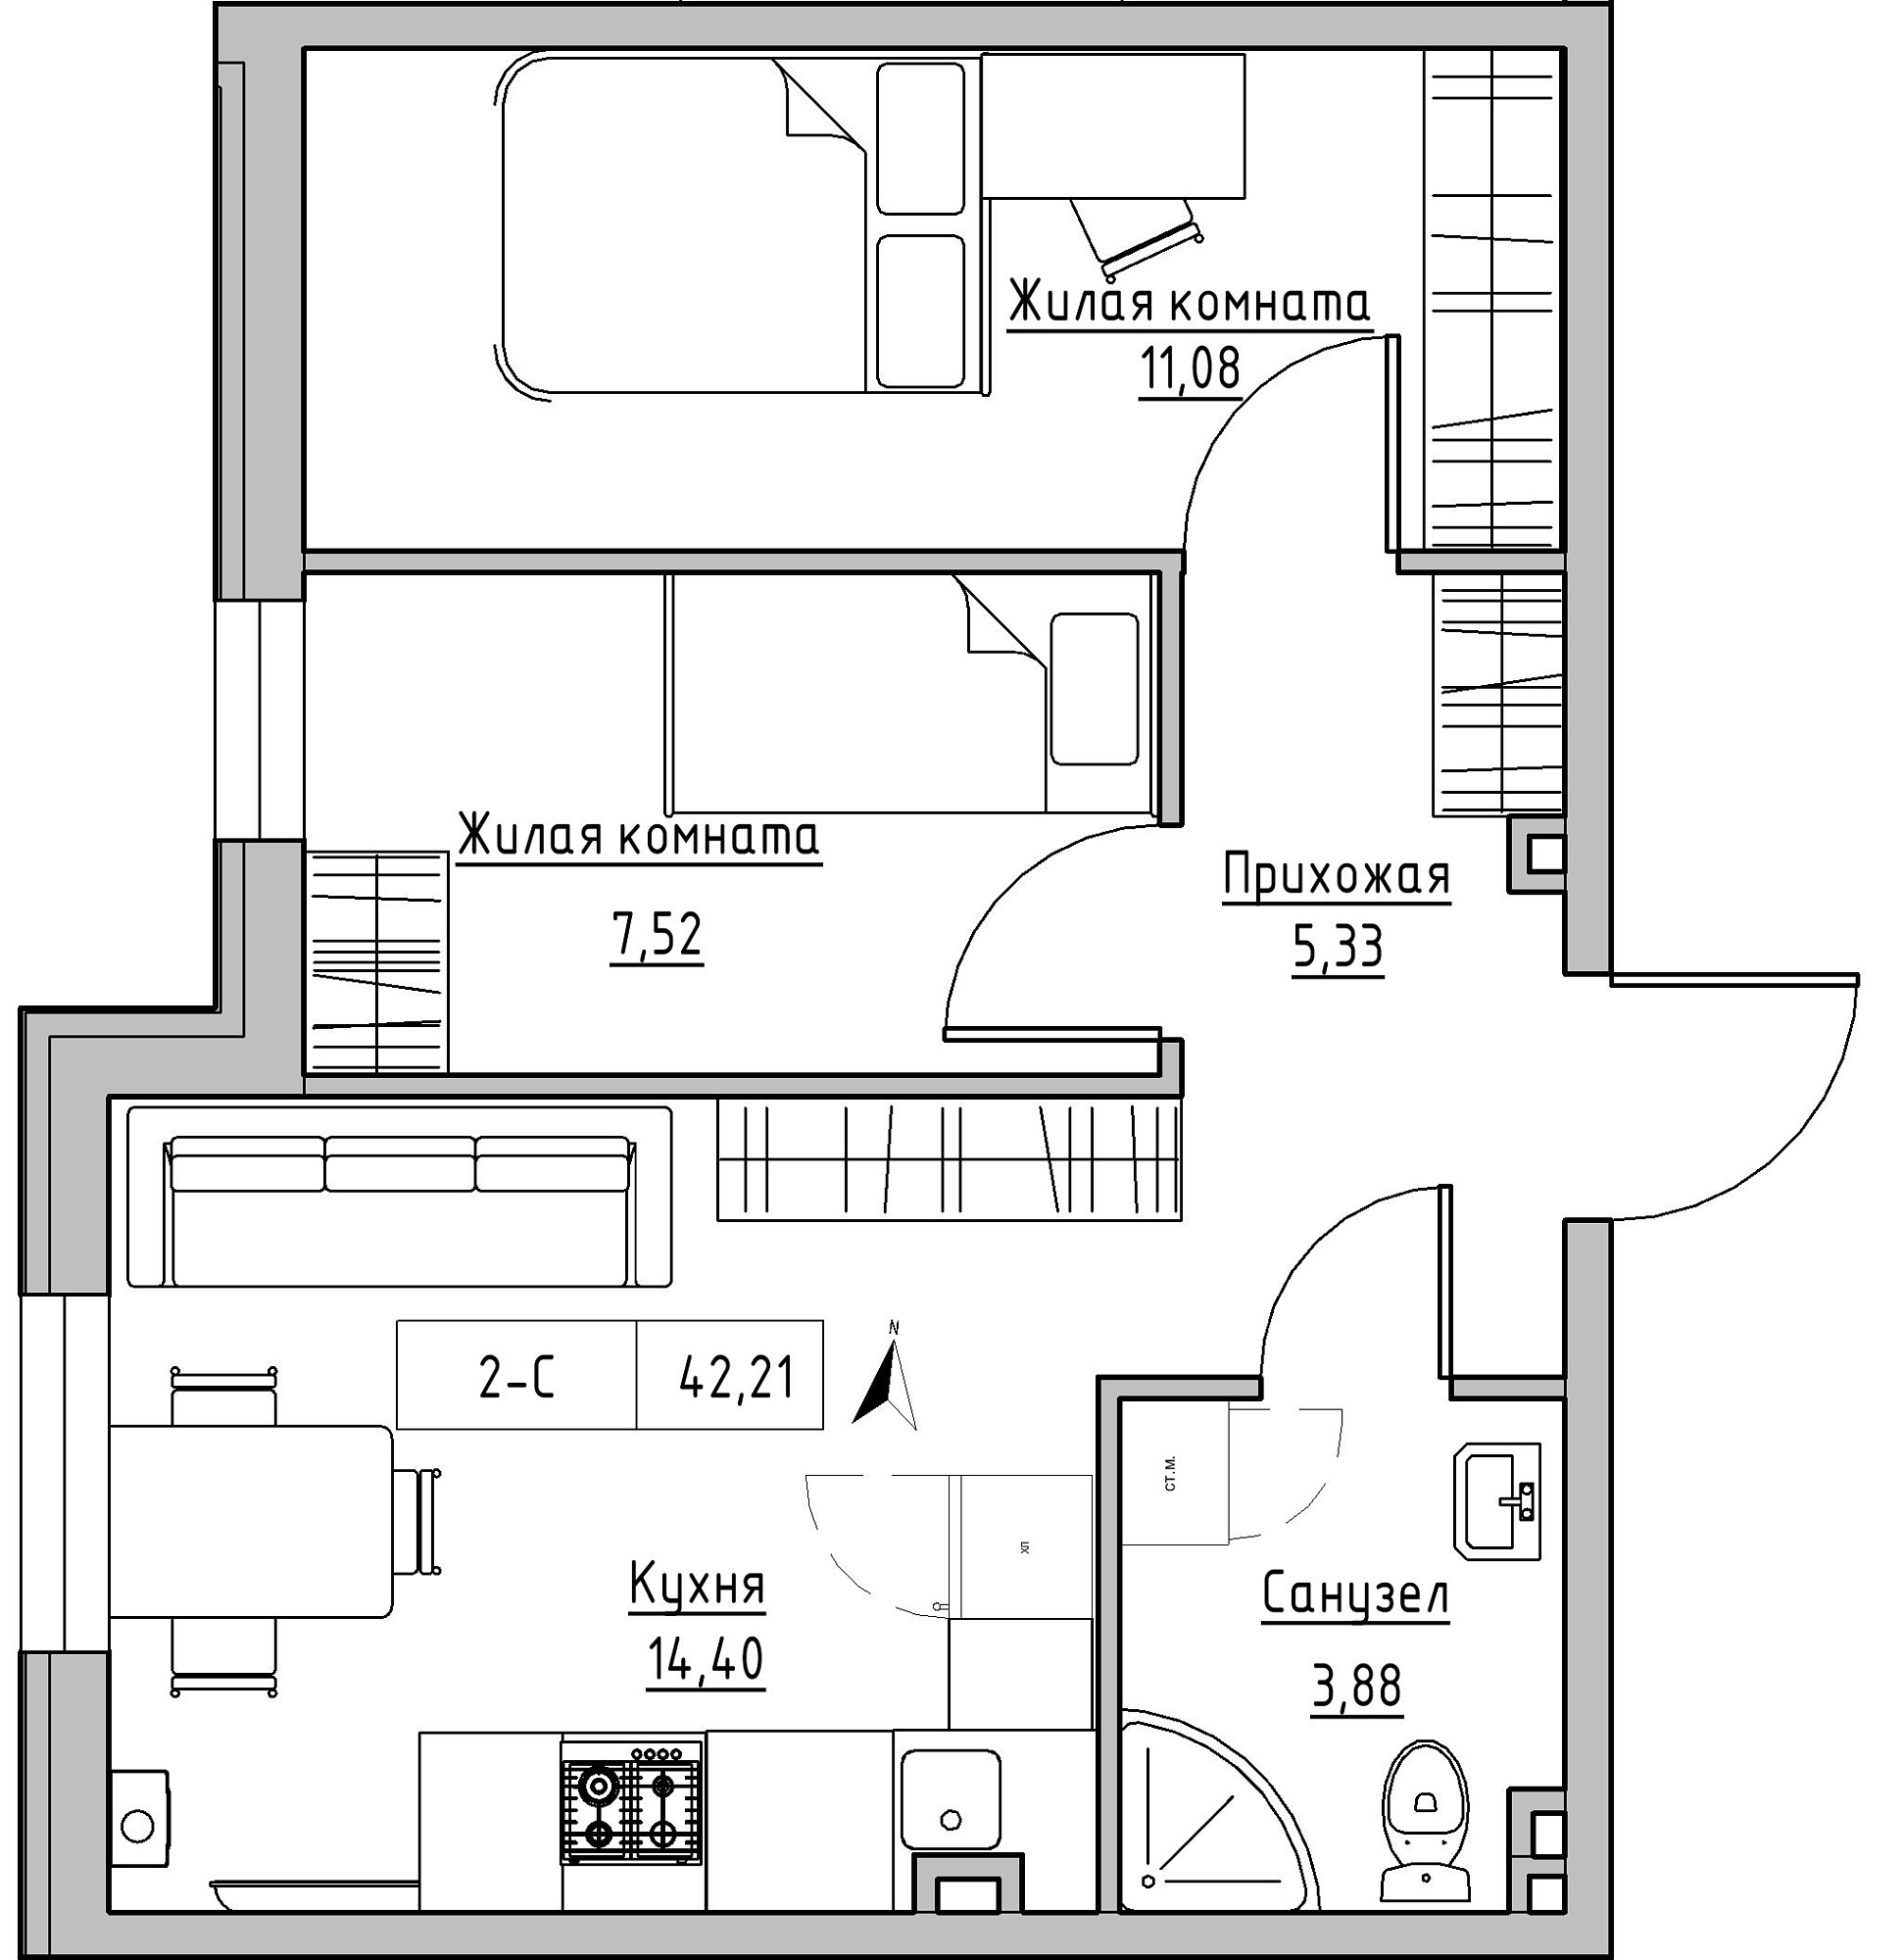 Планування 2-к квартира площею 42.21м2, KS-024-01/0010.